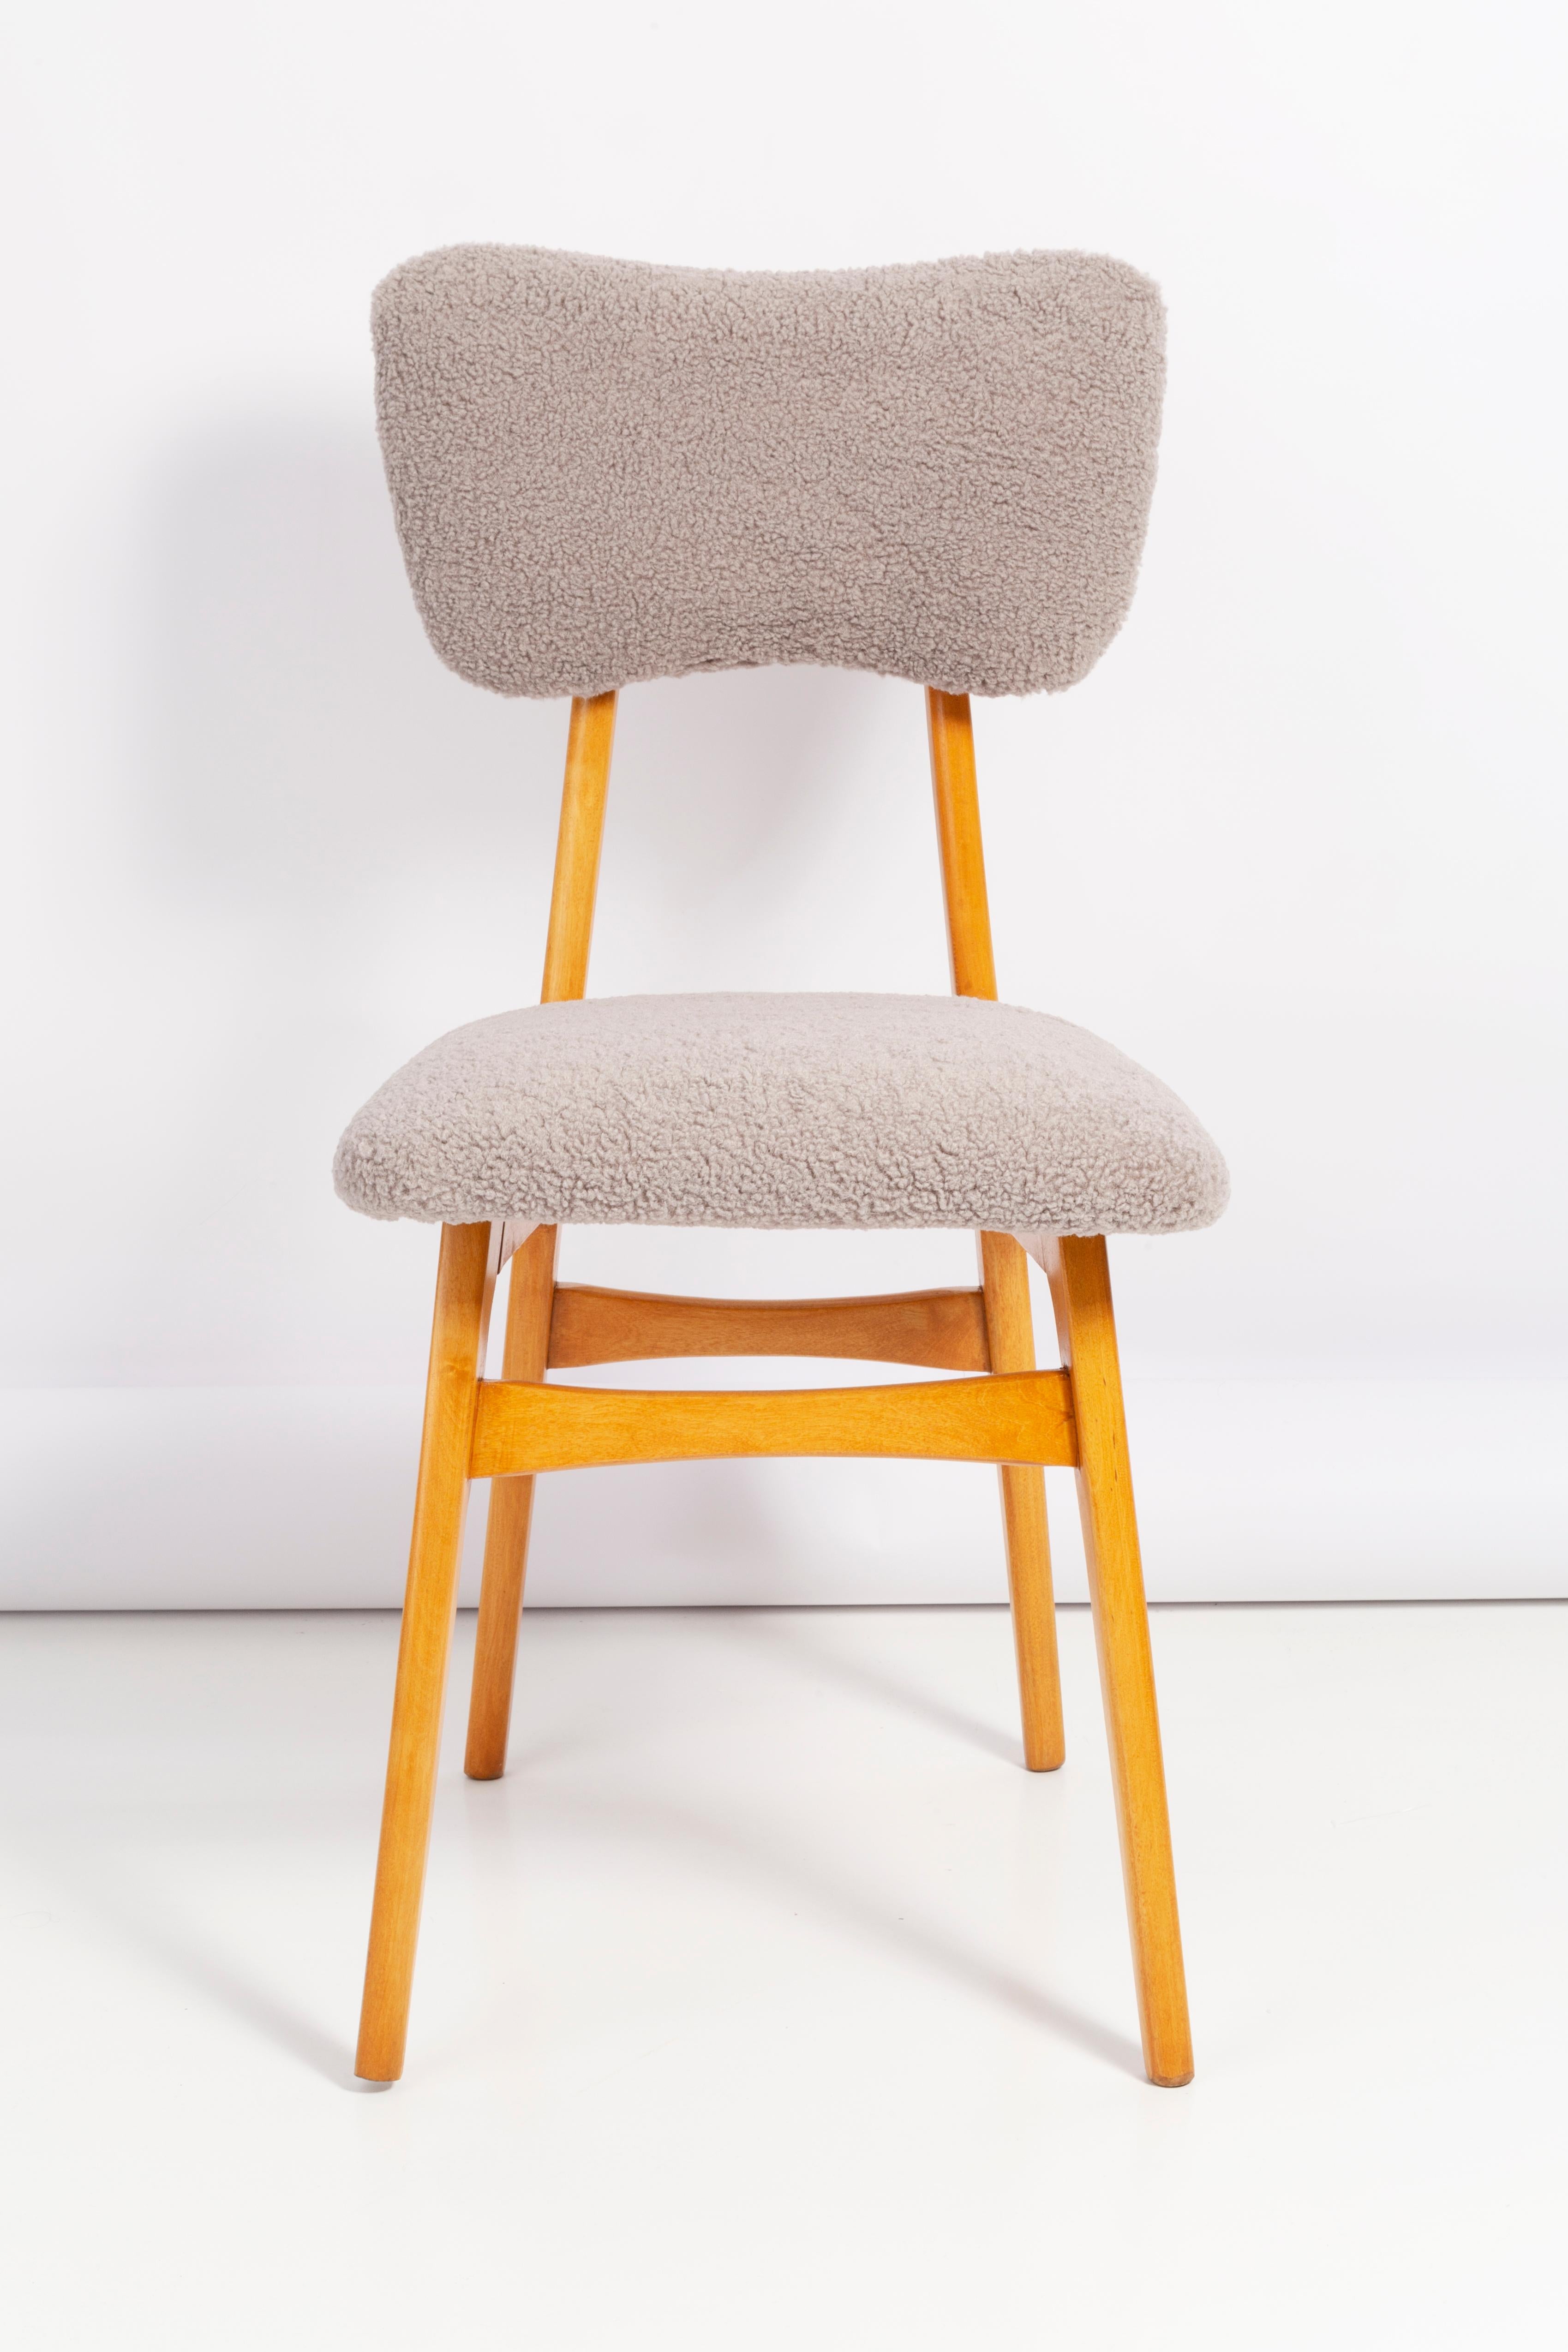 Stuhl entworfen von Prof. Rajmund Halas. Hergestellt aus Buchenholz. Der Stuhl wurde komplett neu gepolstert, die Holzarbeiten wurden aufgefrischt. Sitz und Rückenlehne sind mit grauem, strapazierfähigem und angenehm zu berührendem Boucle-Stoff